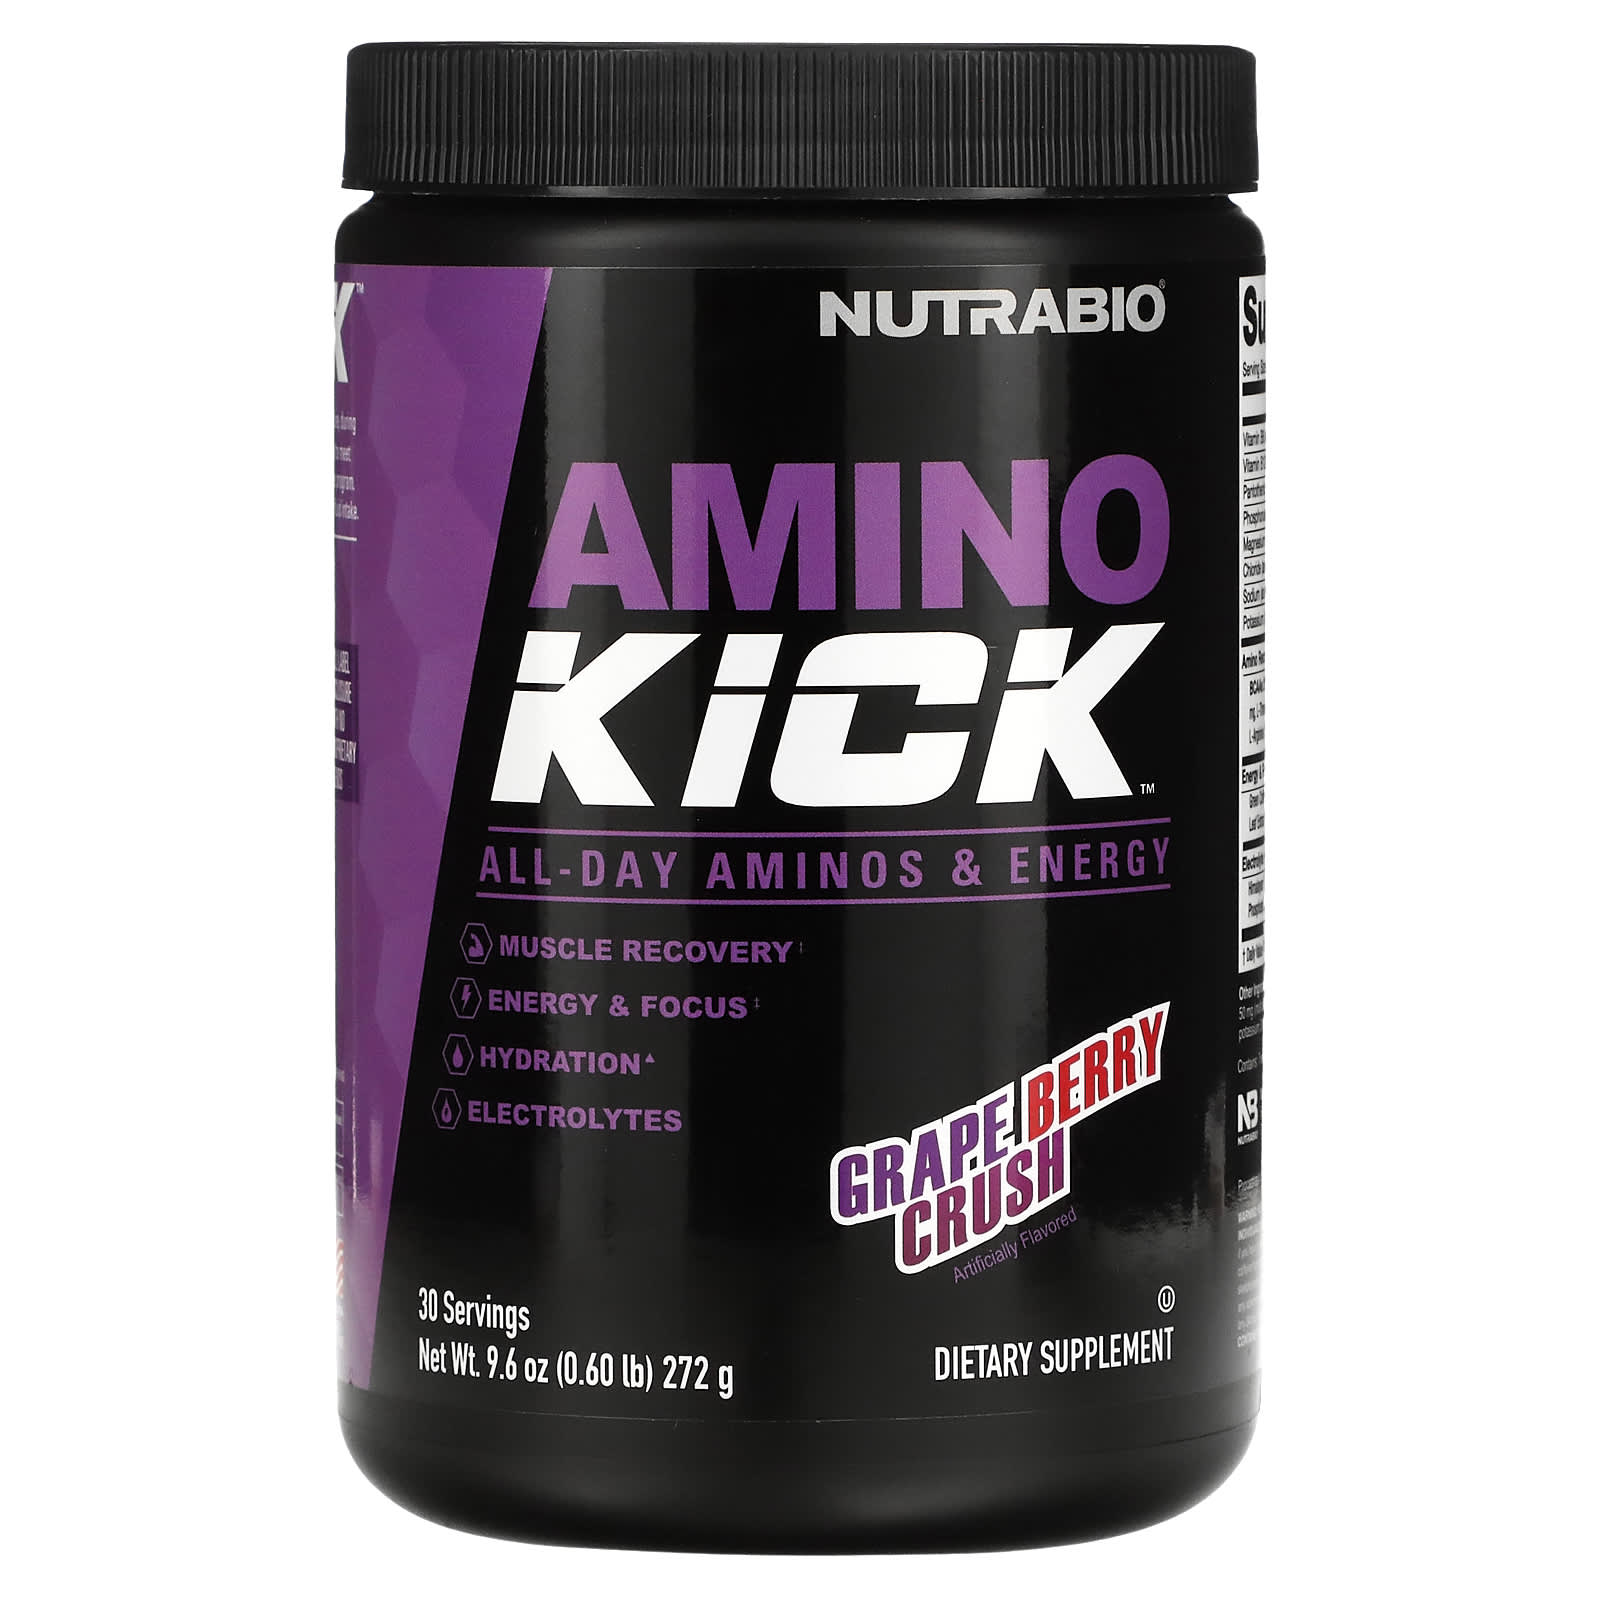 Пищевая Добавка Nutrabio Labs Amino Kick, виноград / ягоды, 272 г спортивная добавка nutrabio labs amino kick голубая малина 20 стиков по 9г